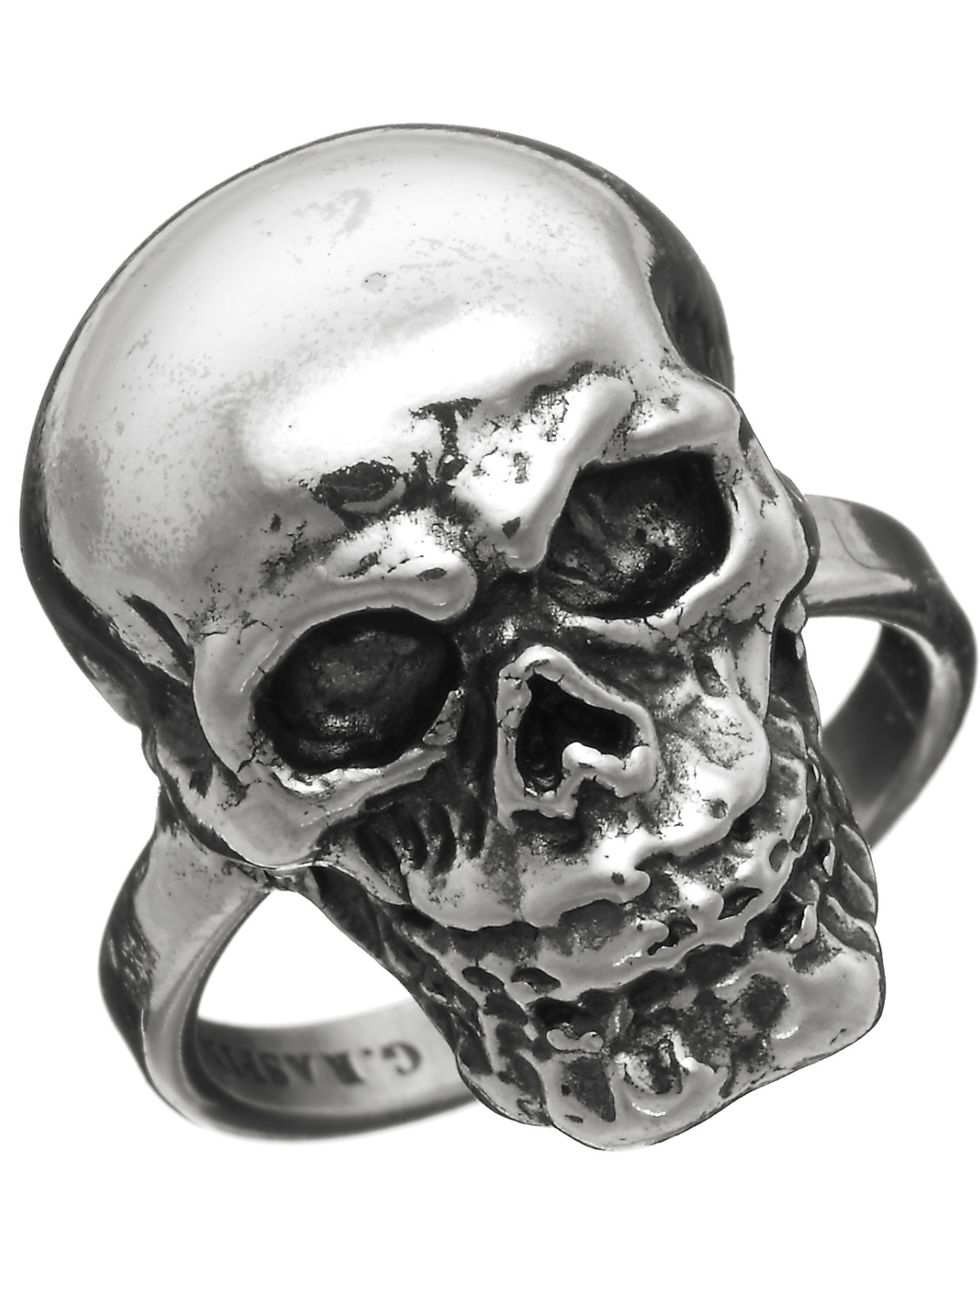 Bone, Skull, Silver, Still life photography, 